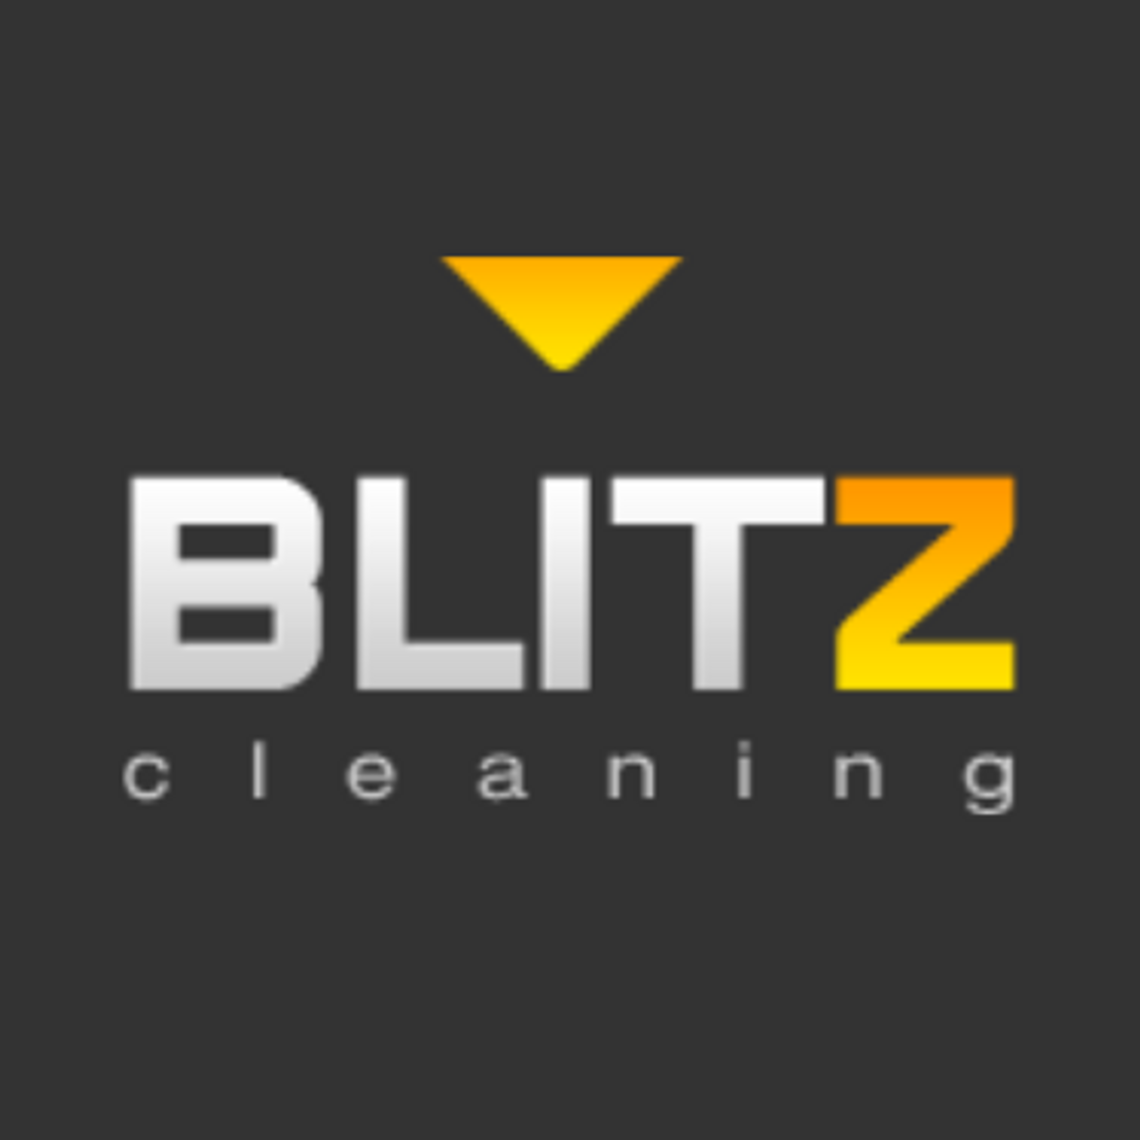  Firma sprzątająca - Blitz cleaning Gliwice